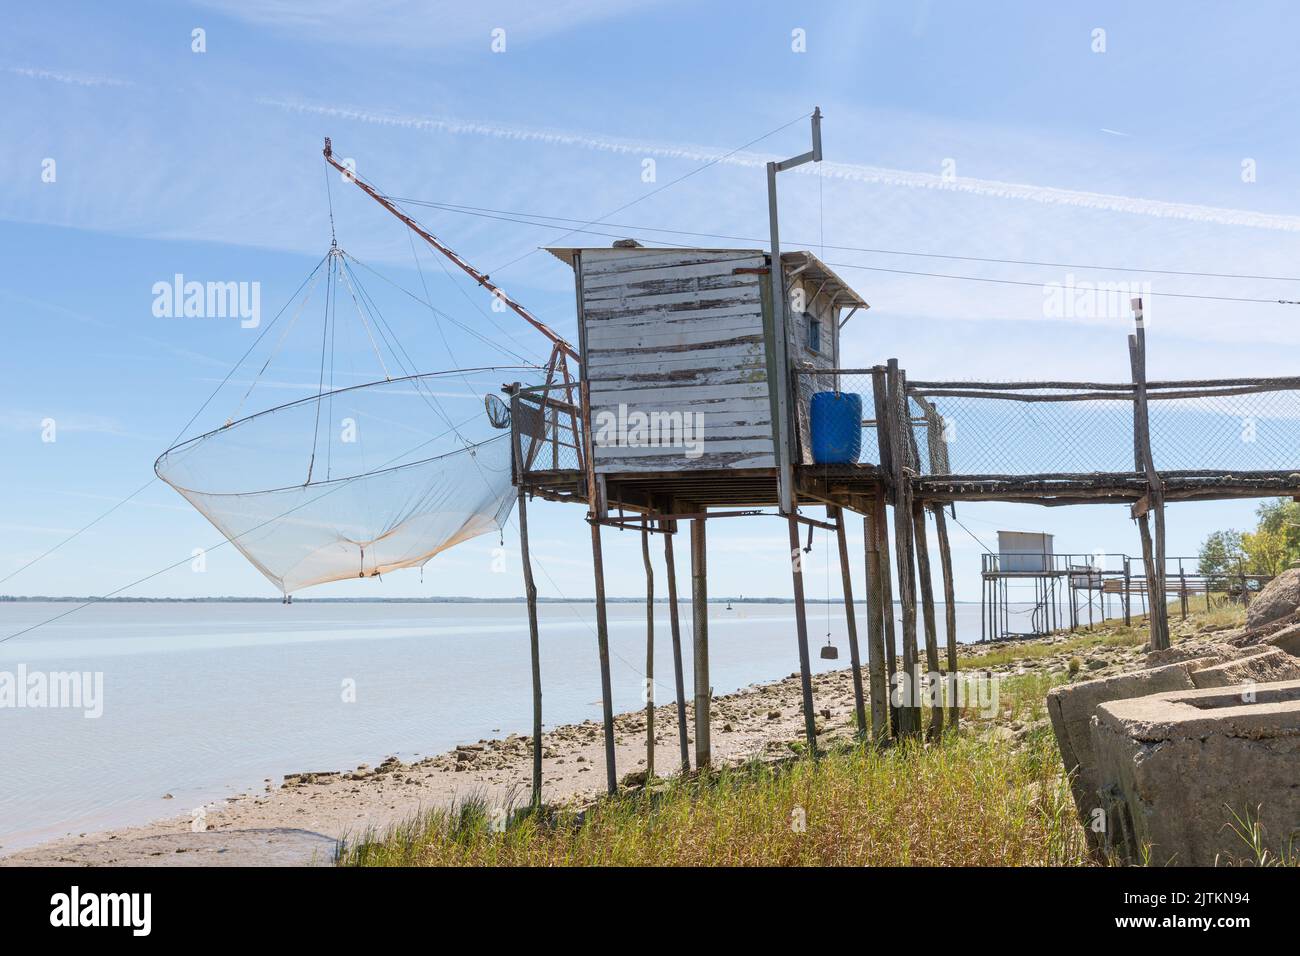 Baracche da pesca presso l'estuario della Gironda, Bordeaux, Francia Foto Stock